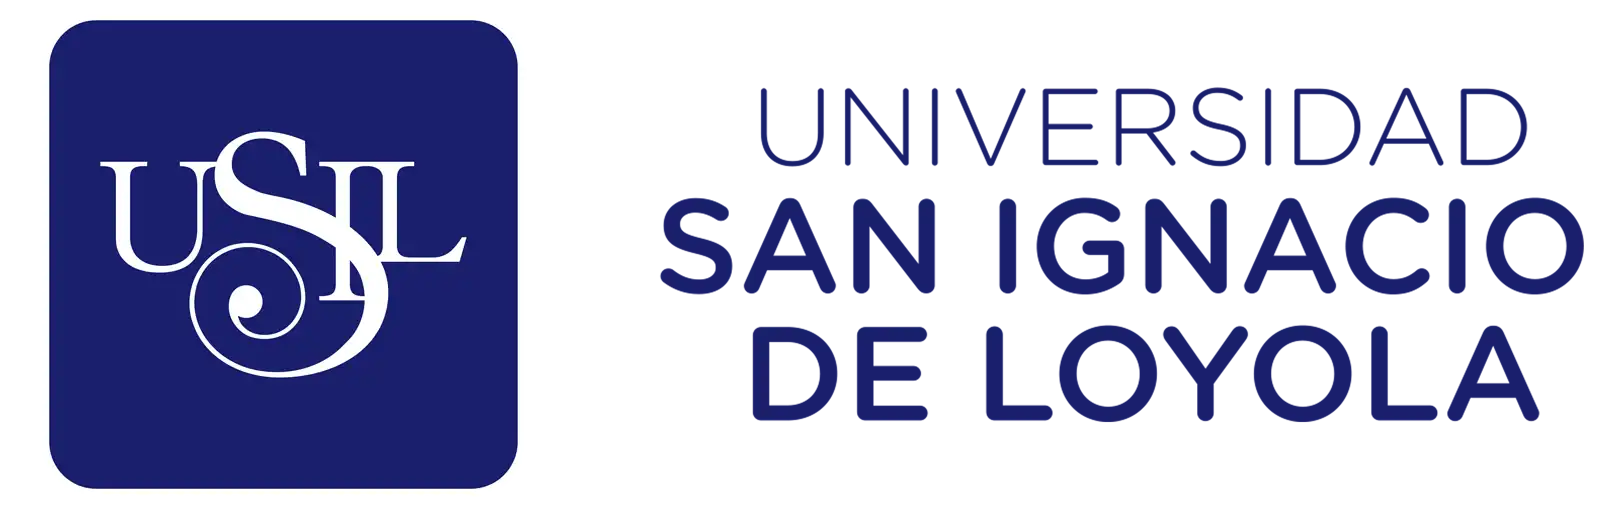 usil - Universidad San Ignacio de Loyola